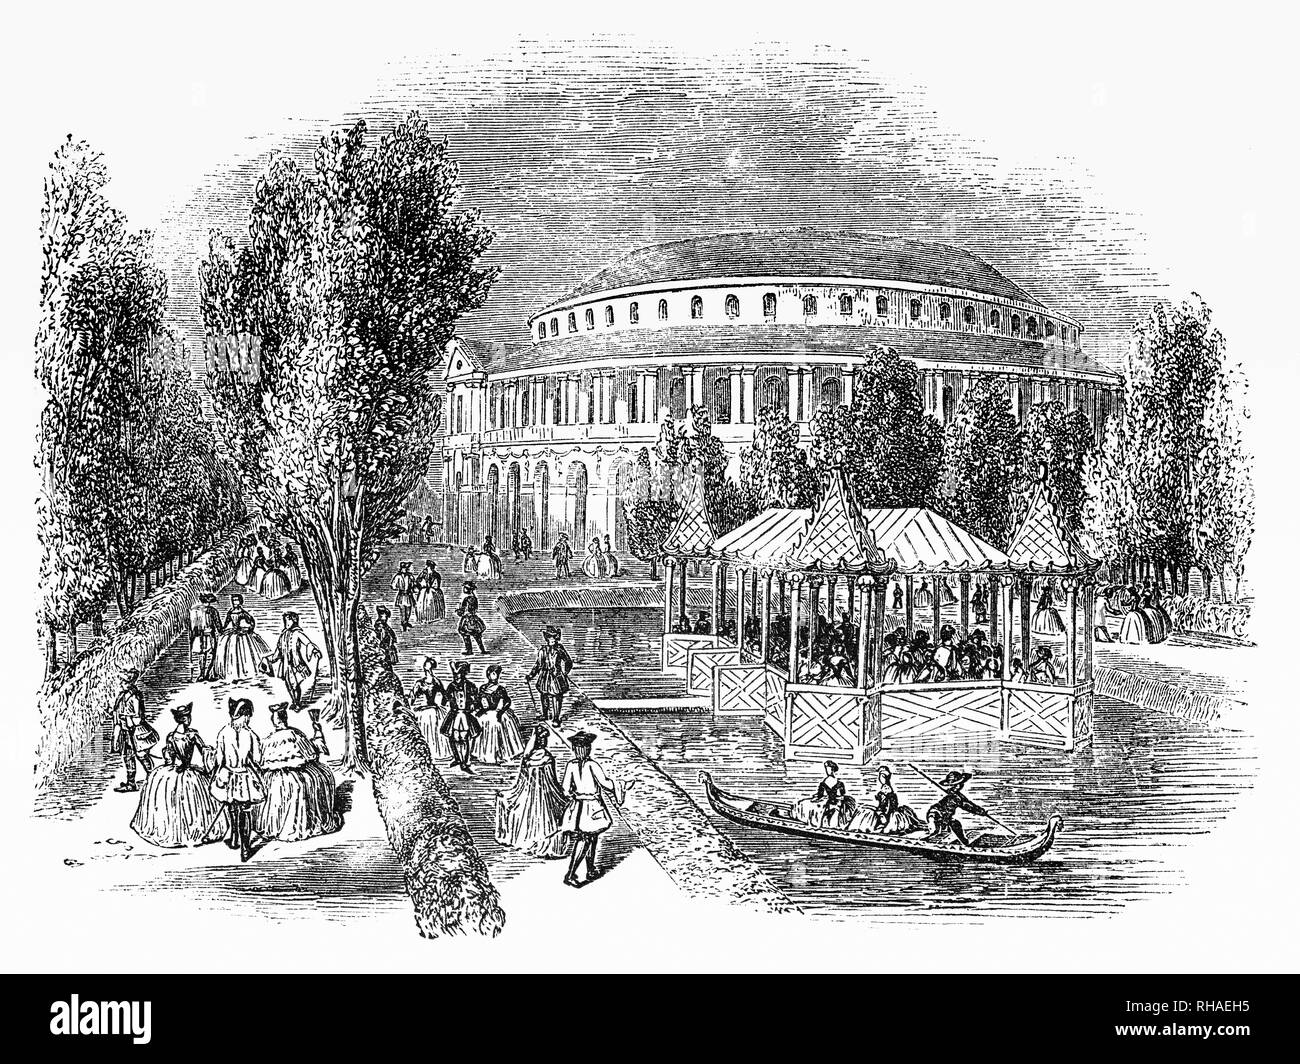 Ranelagh Gardens erano settecento pubblico Pleasure Gardens si trova nel quartiere di Chelsea, allora appena fuori Londra, Inghilterra. Nel 1742, la casa e i giardini sono aperti al pubblico. Il pezzo forte è stata la rotunda rococò, progettato da William Jones, un geometra per la East India Company, un importante luogo di ritrovo per concerti musicali - nel 1765, a nove anni Mozart che vi si svolgono. Vi era anche un padiglione cinese, che è stato aggiunto nel 1750, un lago ornamentale e diverse passeggiate. È ora parte della motivazione del Chelsea Hospital e il sito dell'annuale Chelsea Flower Show. Foto Stock